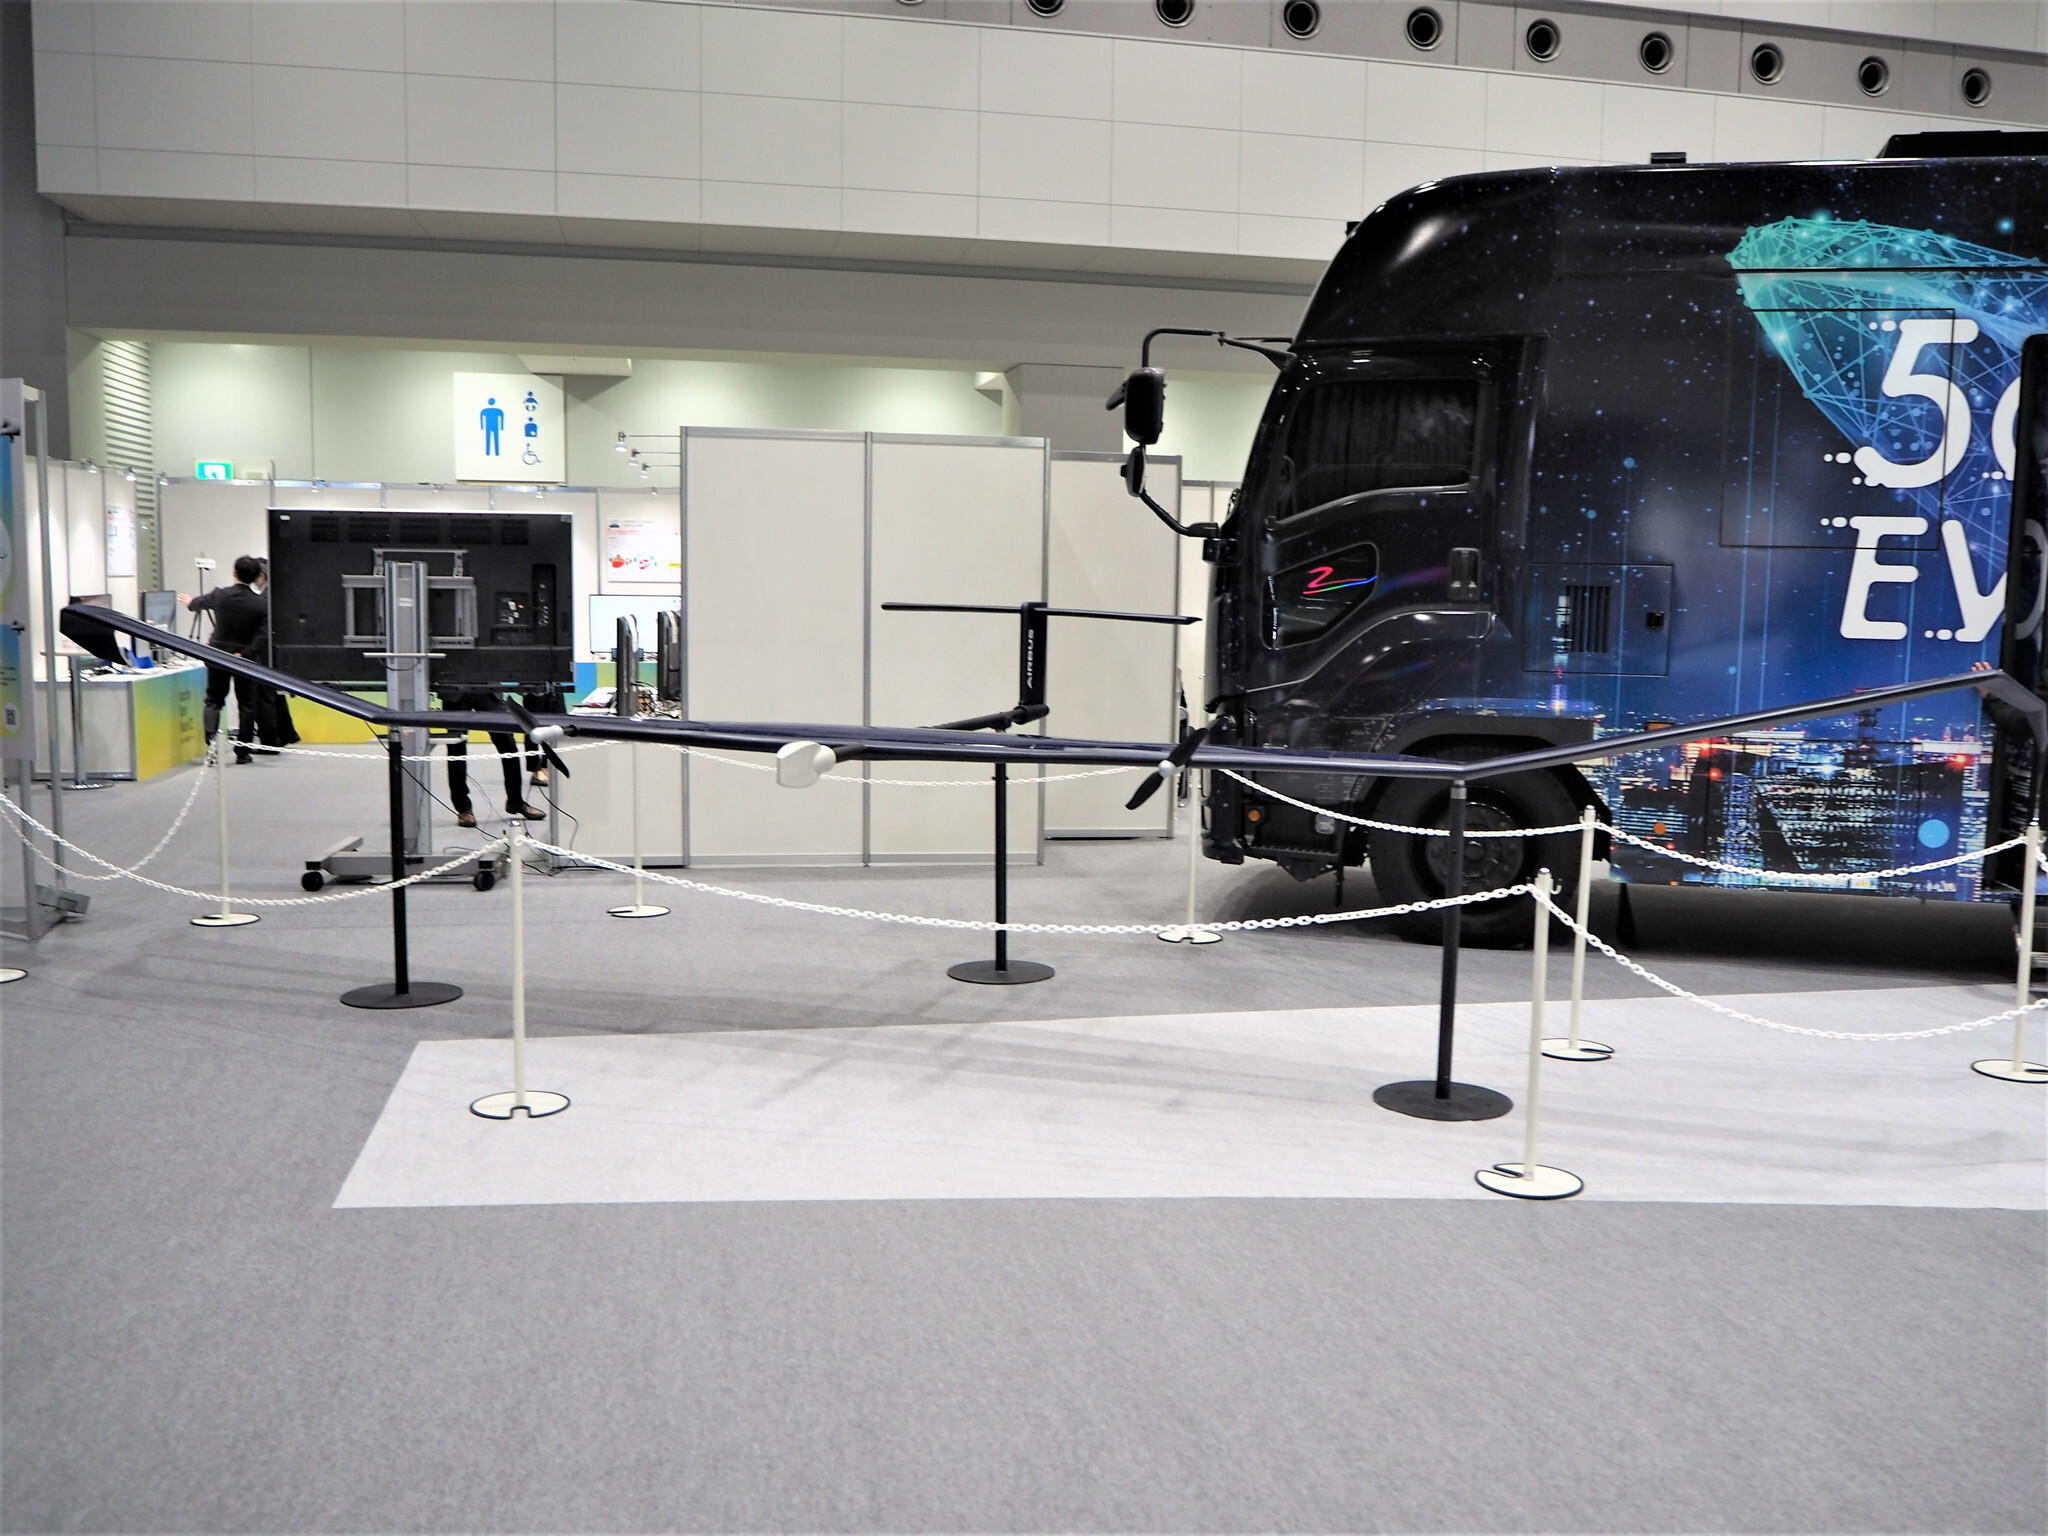 ドコモらが開発を進めているというHAPSの3分の1モデル。エアバス製の機体に基地局などを搭載して成層圏から電波を飛ばす仕組みで、2021年には試験飛行も実施している